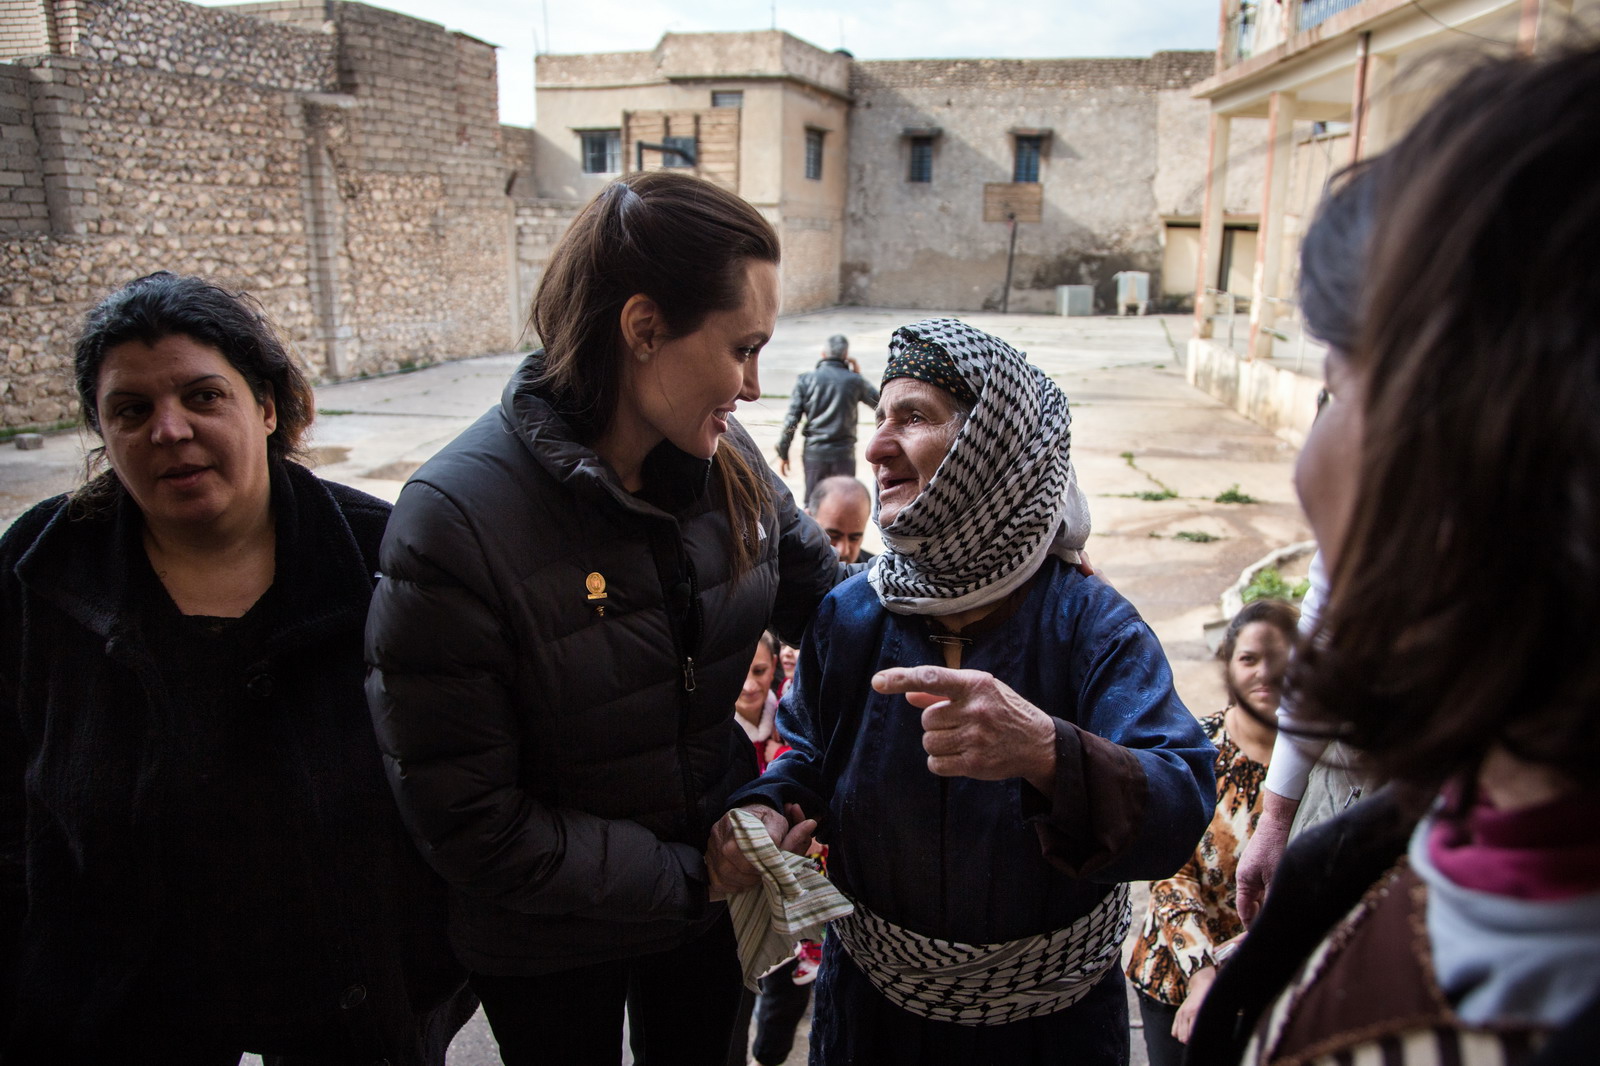 Miről beszélget jazidi asszonyokkal Angelina Jolie?